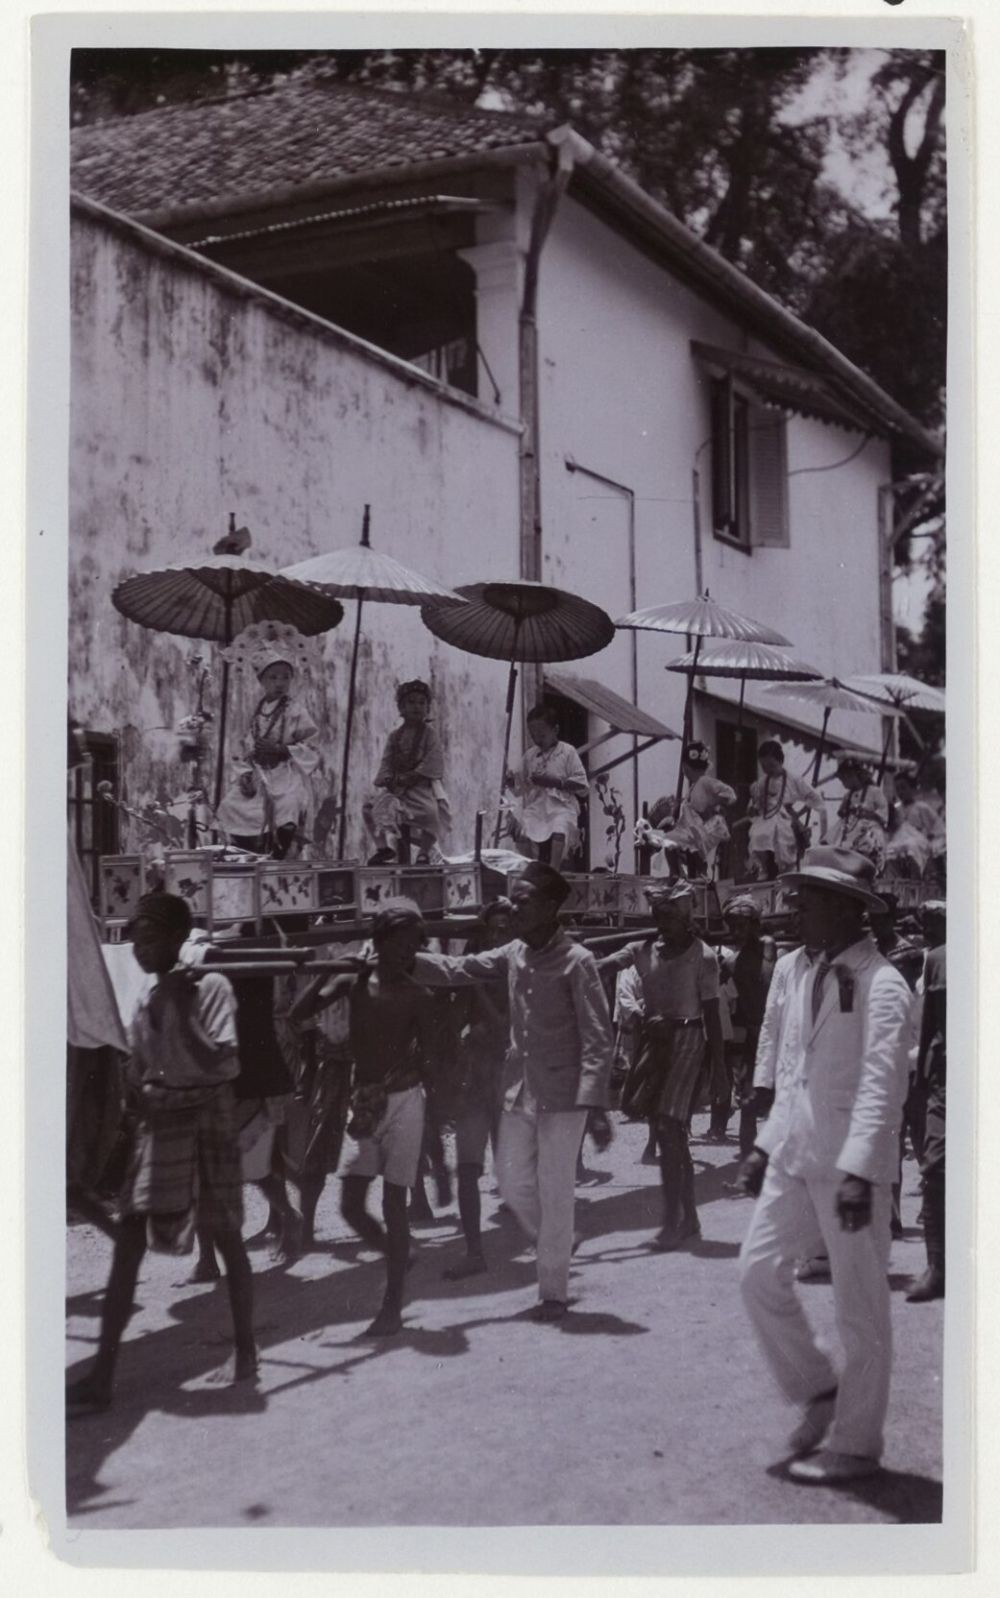 [FOTO] Kehidupan Komunitas Tionghoa di Kota Makassar 100 Tahun Lalu